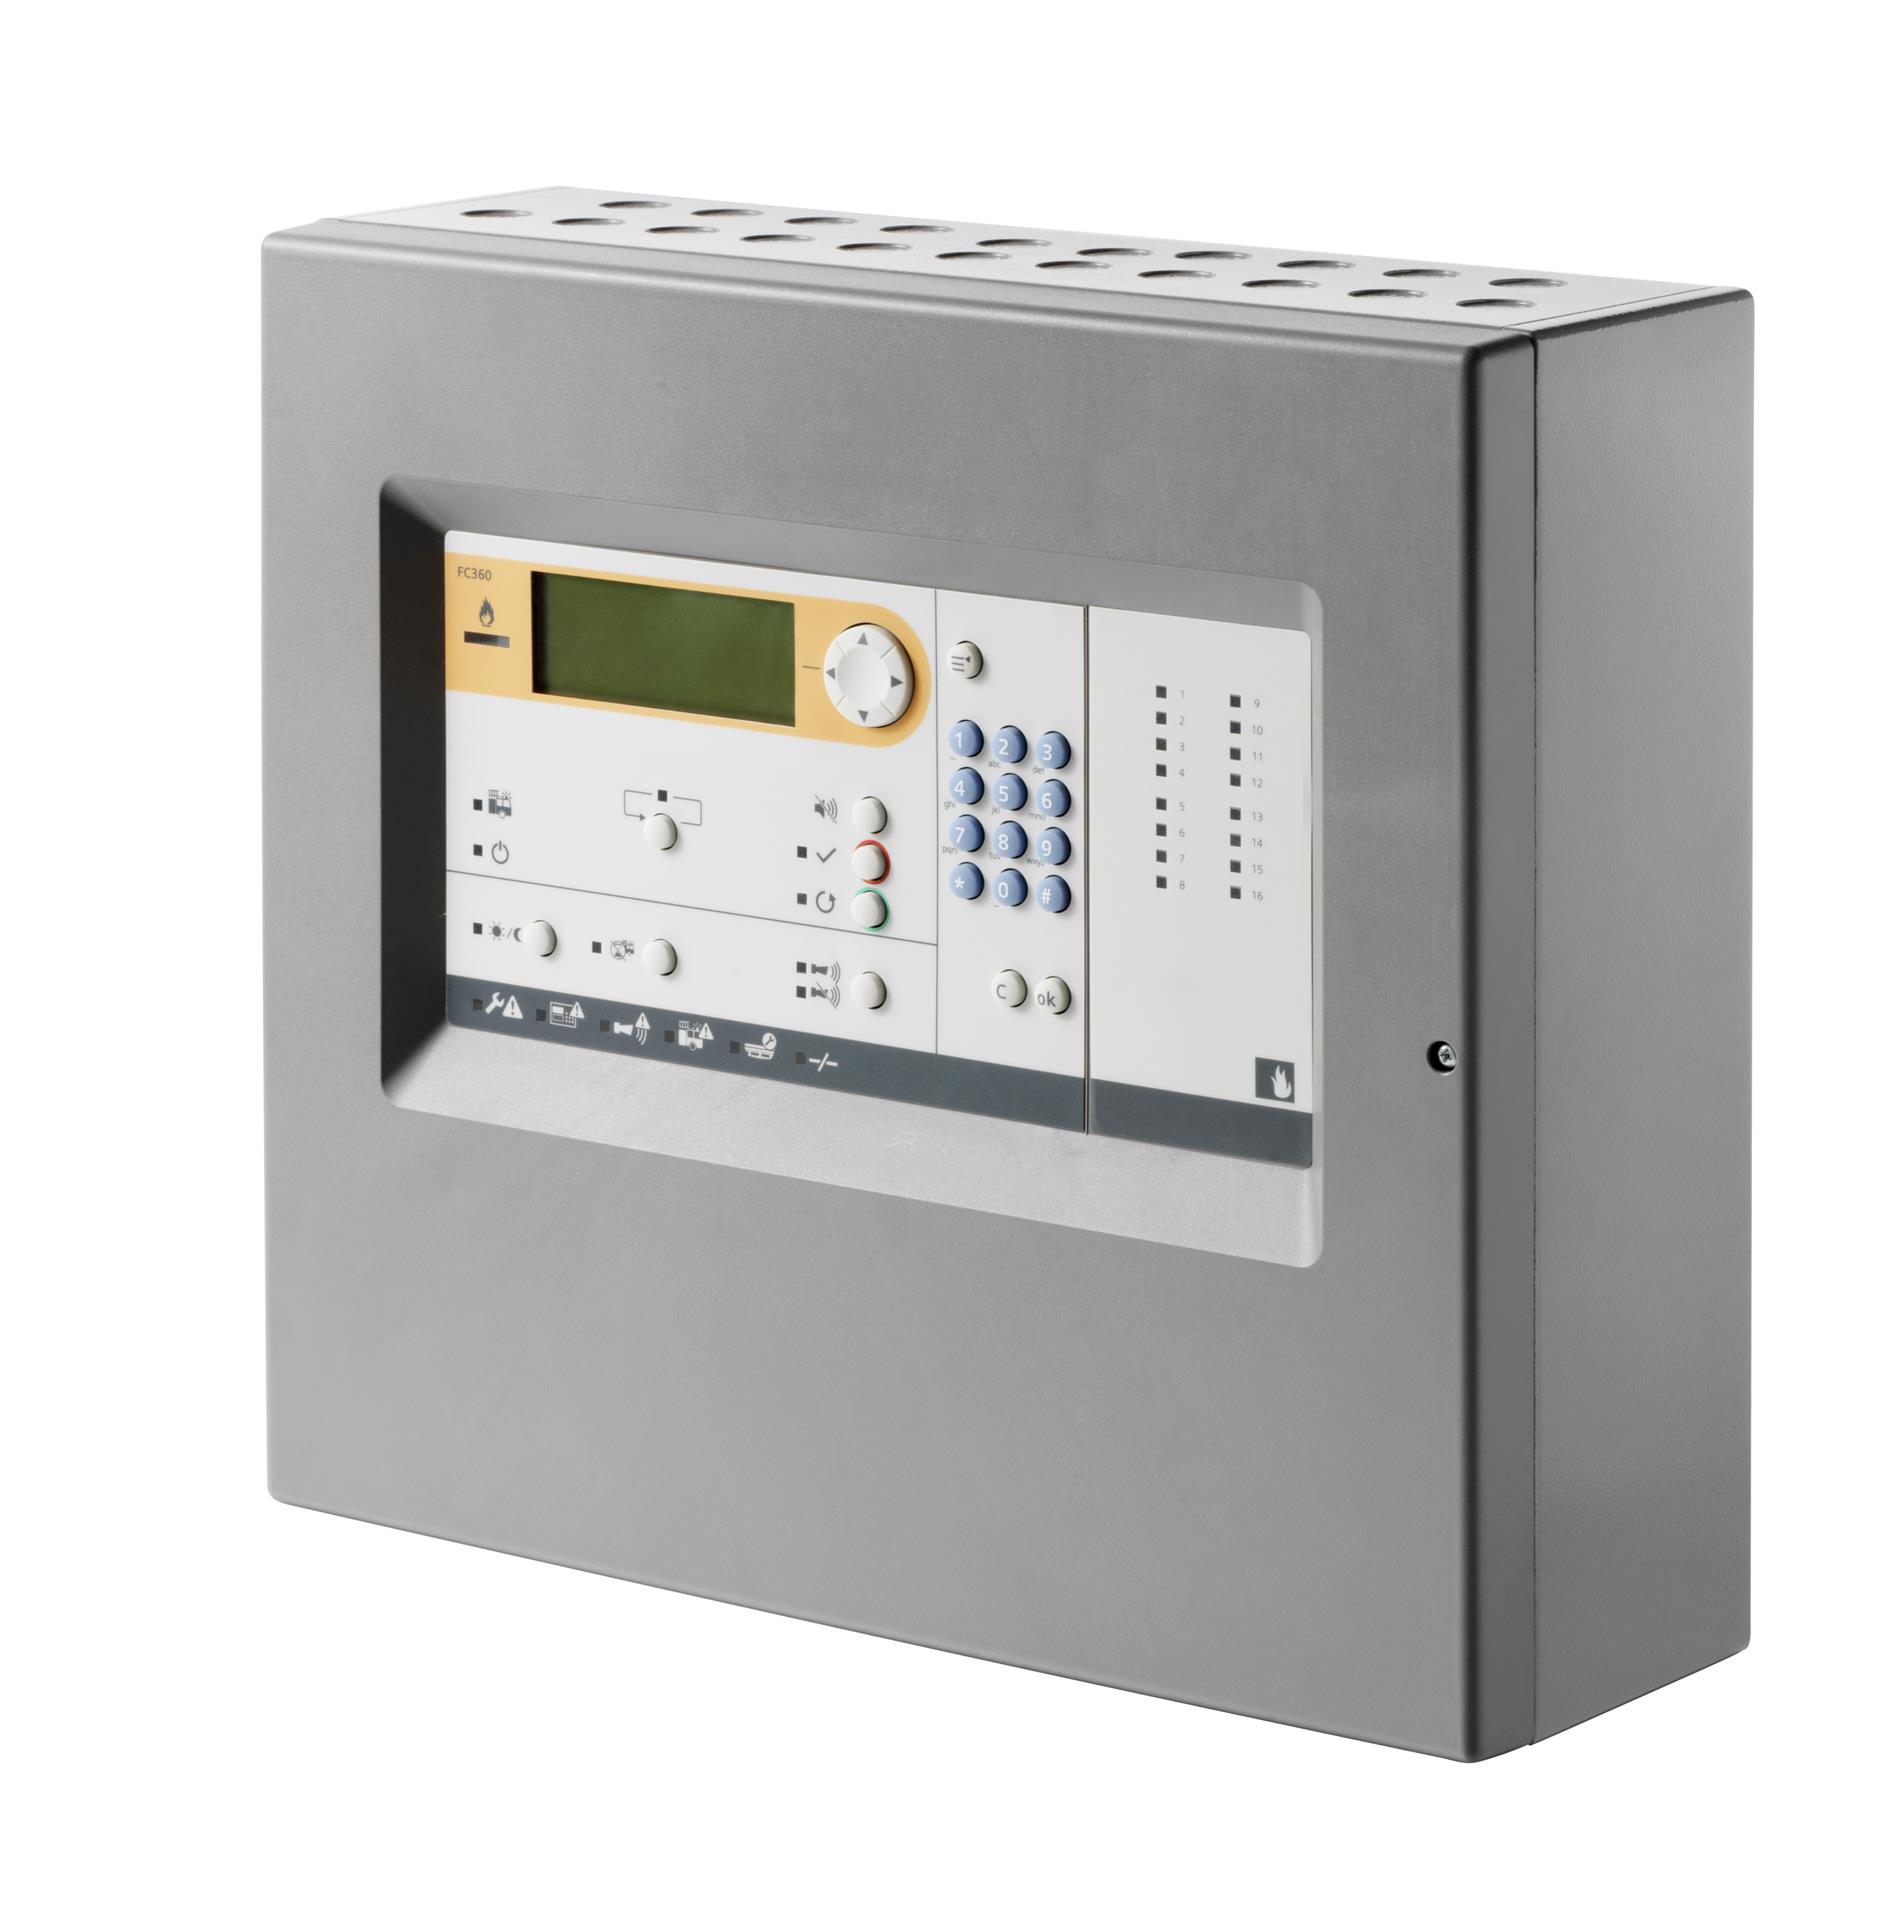 Cerberus FIT İnteraktif Yangın Algılama ve Alarm Kontrol Paneli - Kompakt Kasa ve LED Indicator (1 loop, 126 adres)